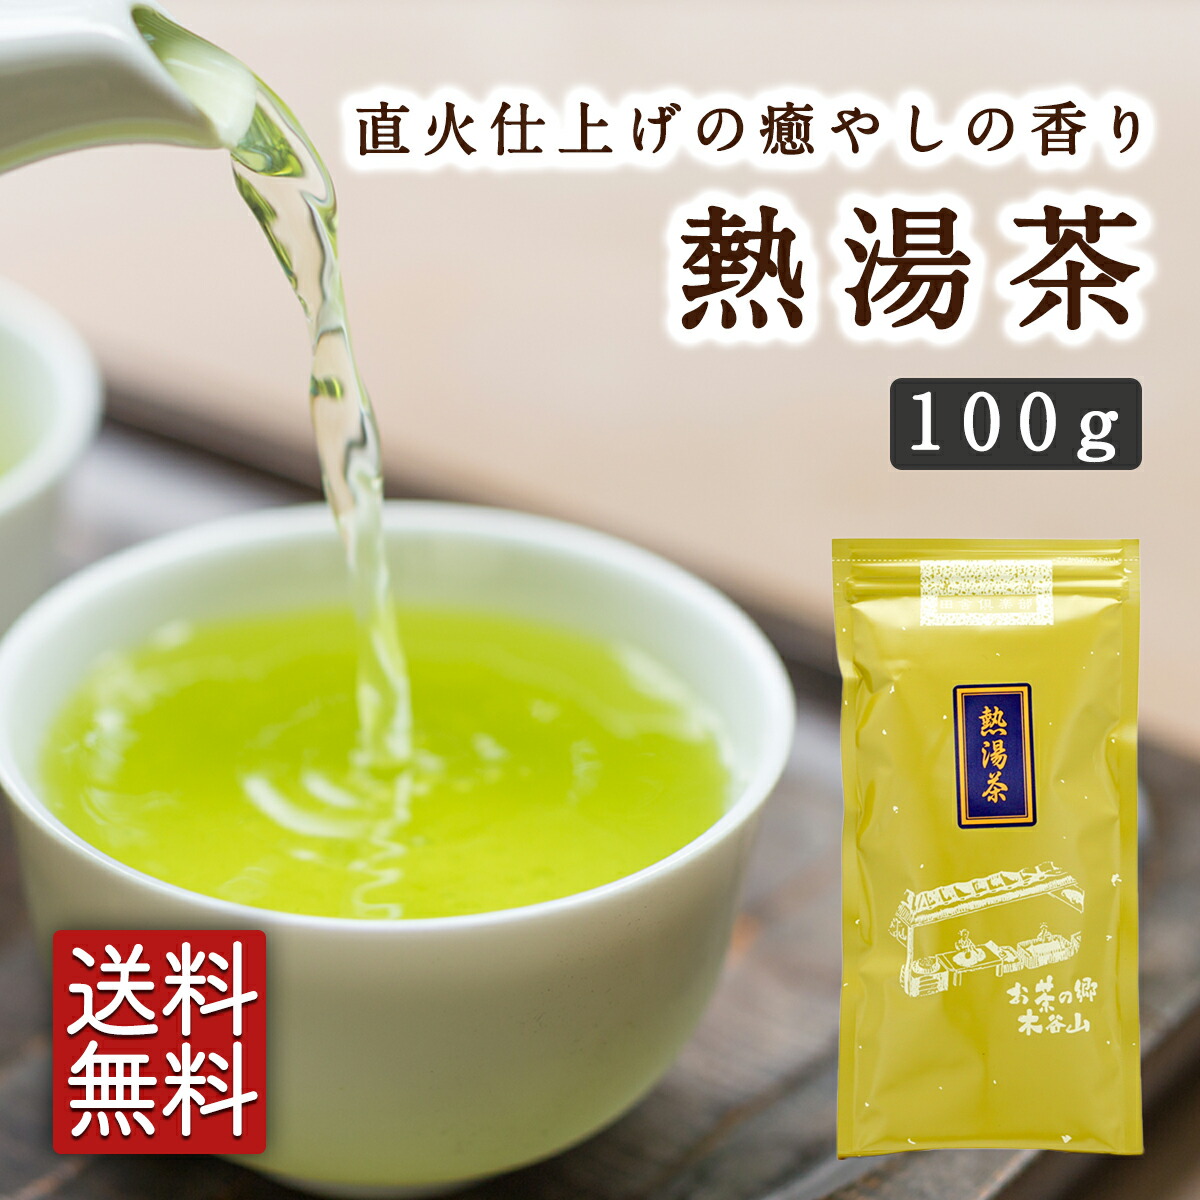 【2023 新茶】熱湯茶100g×2本セット かぶせ茶 緑茶 煎茶 宇治茶 お茶 日本茶 茶葉